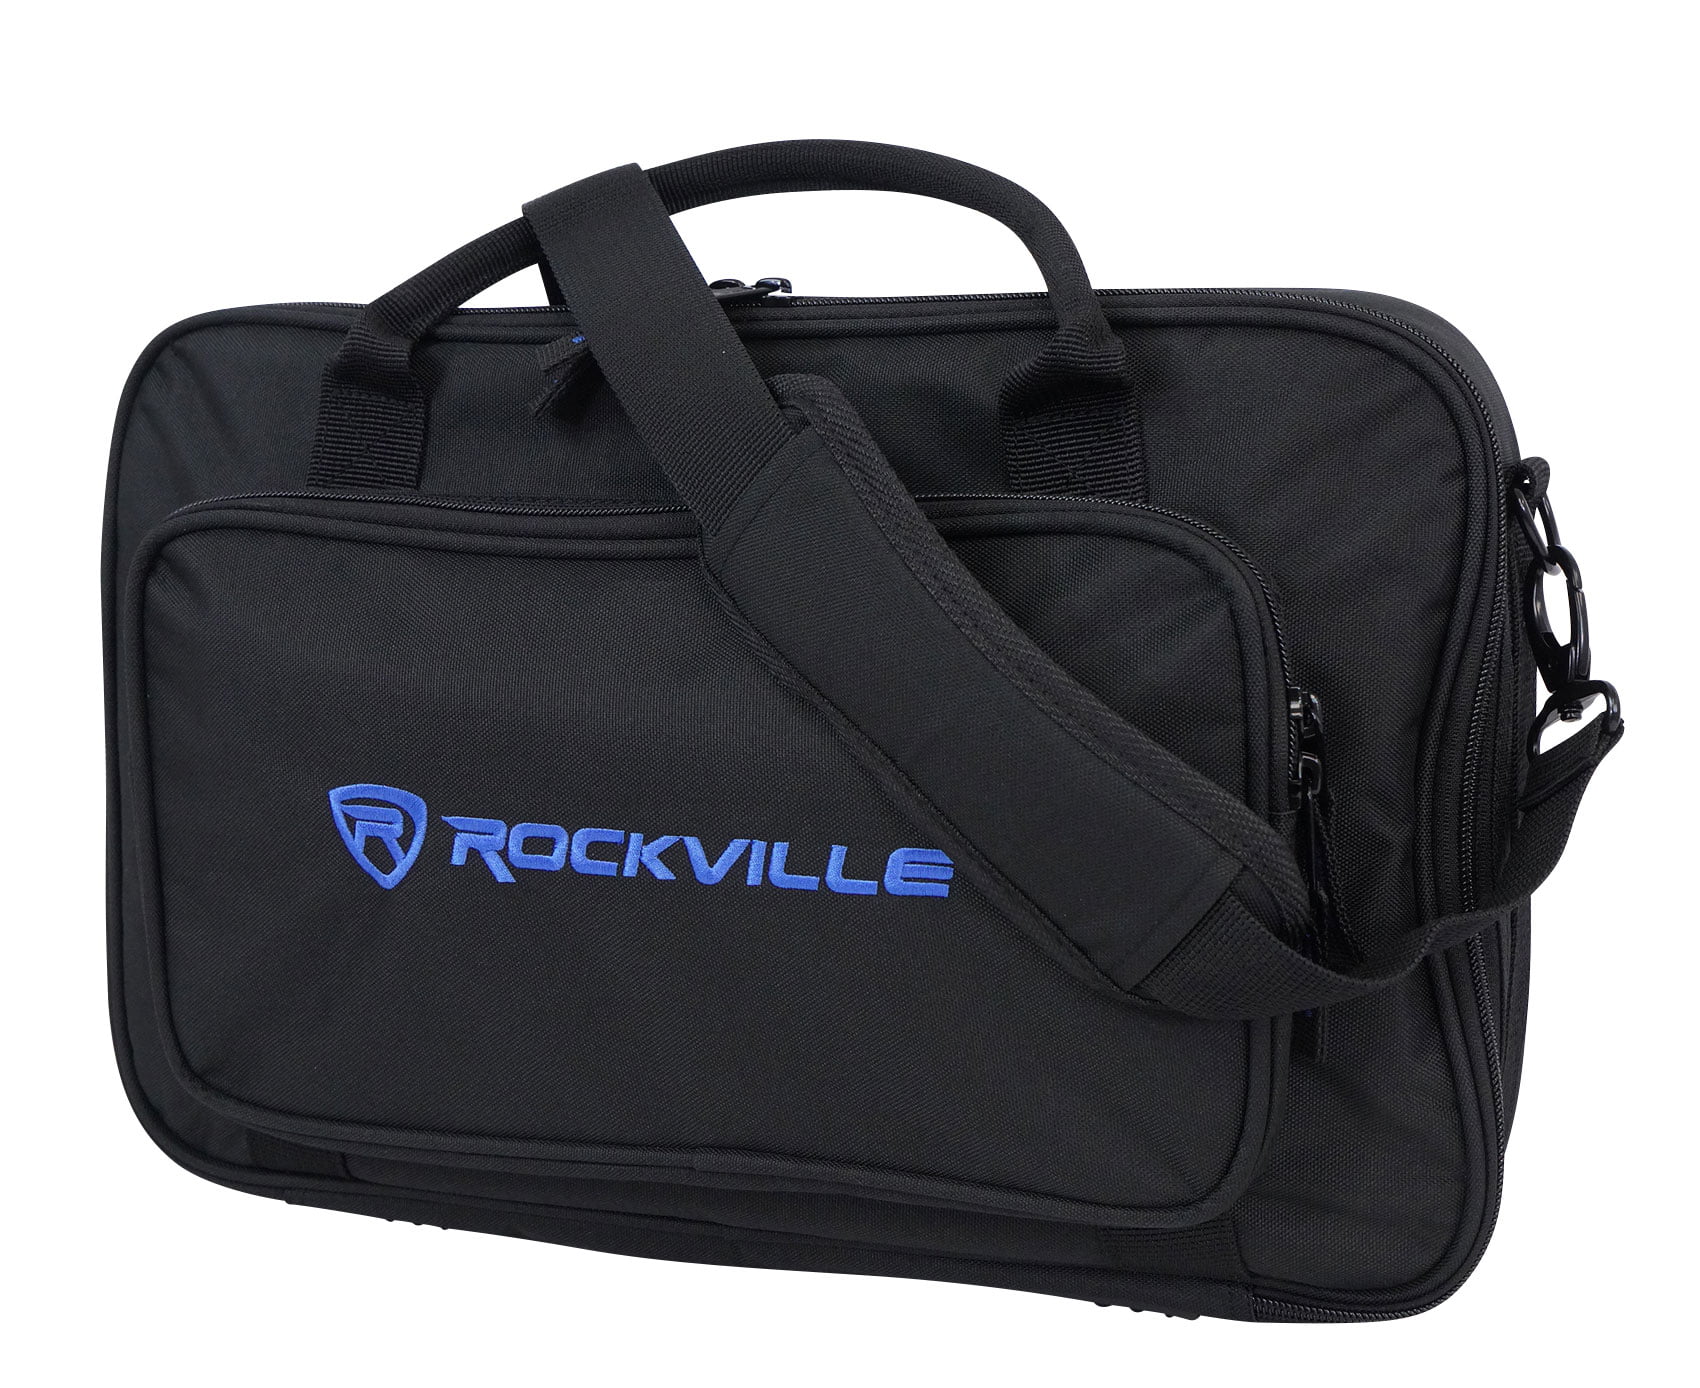 Behringer Rockville Heavy Duty Rugged Gig Bag DJ Case Fits Behringer Xenyx 1202 